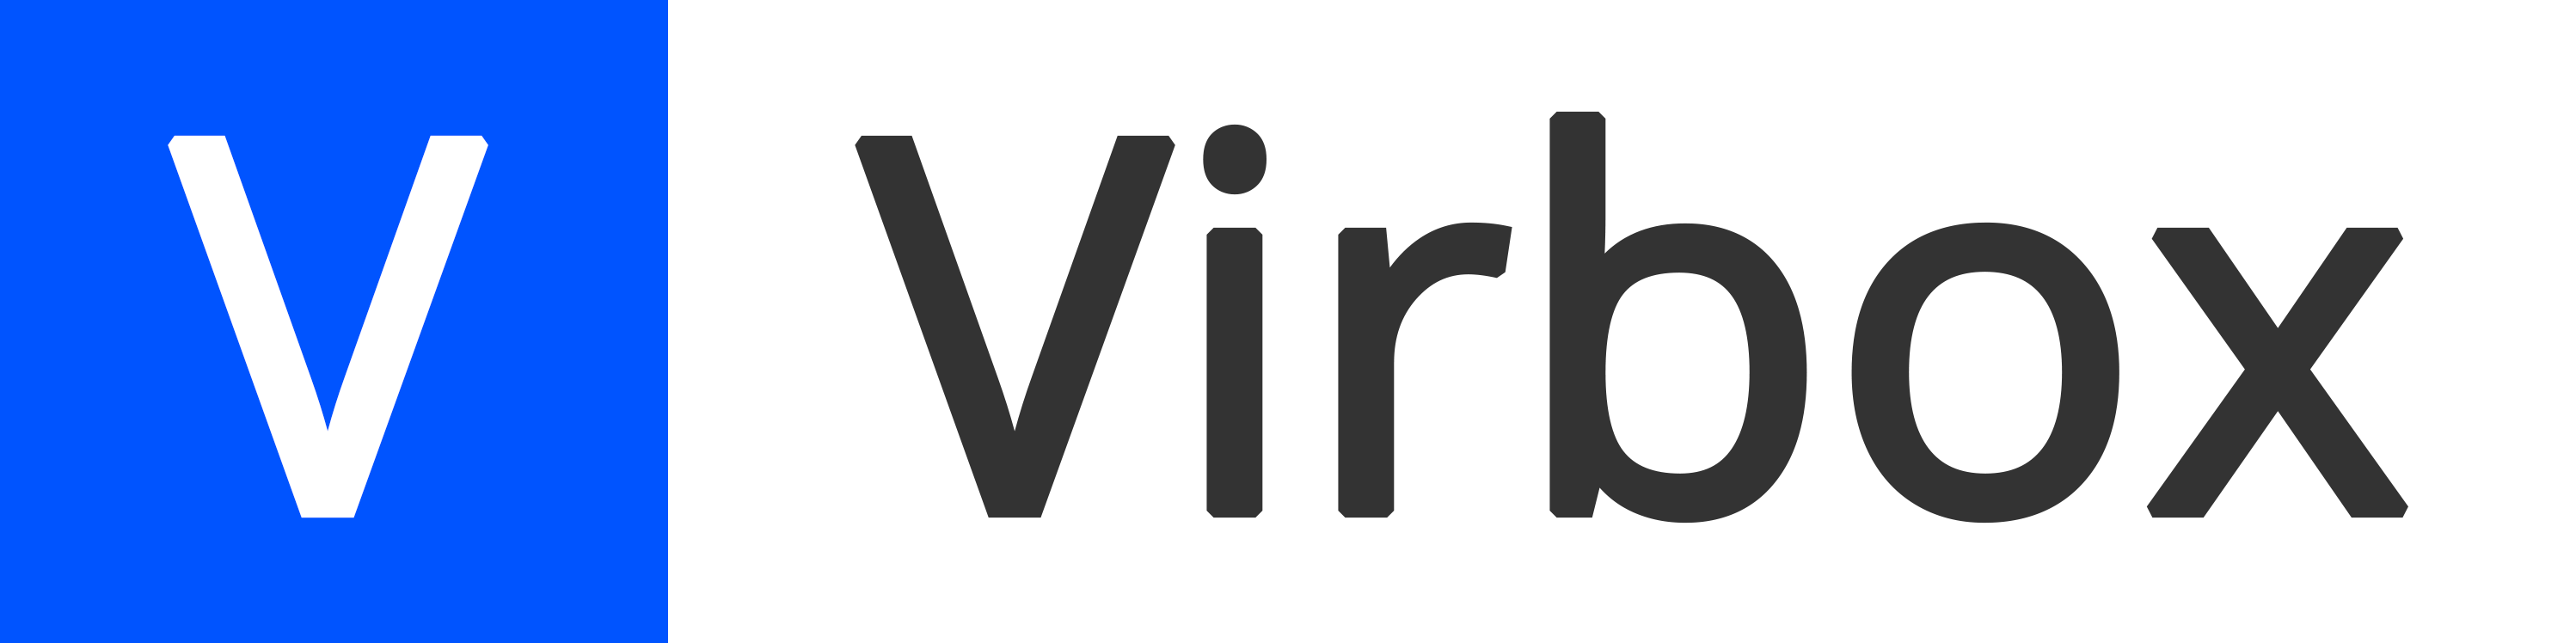 Virbox